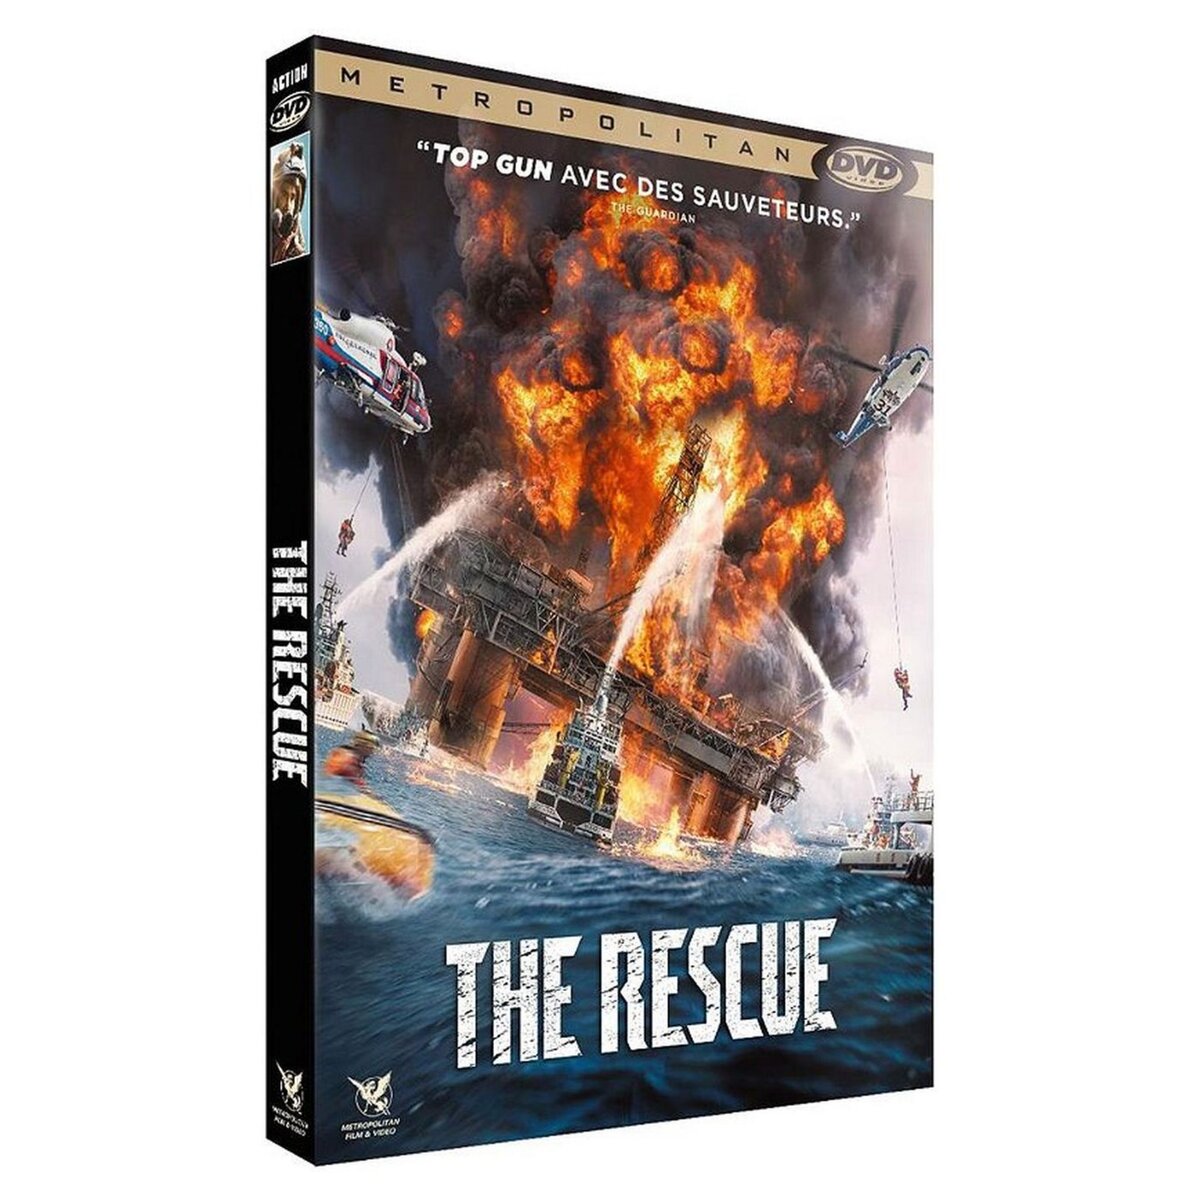 The Rescue DVD